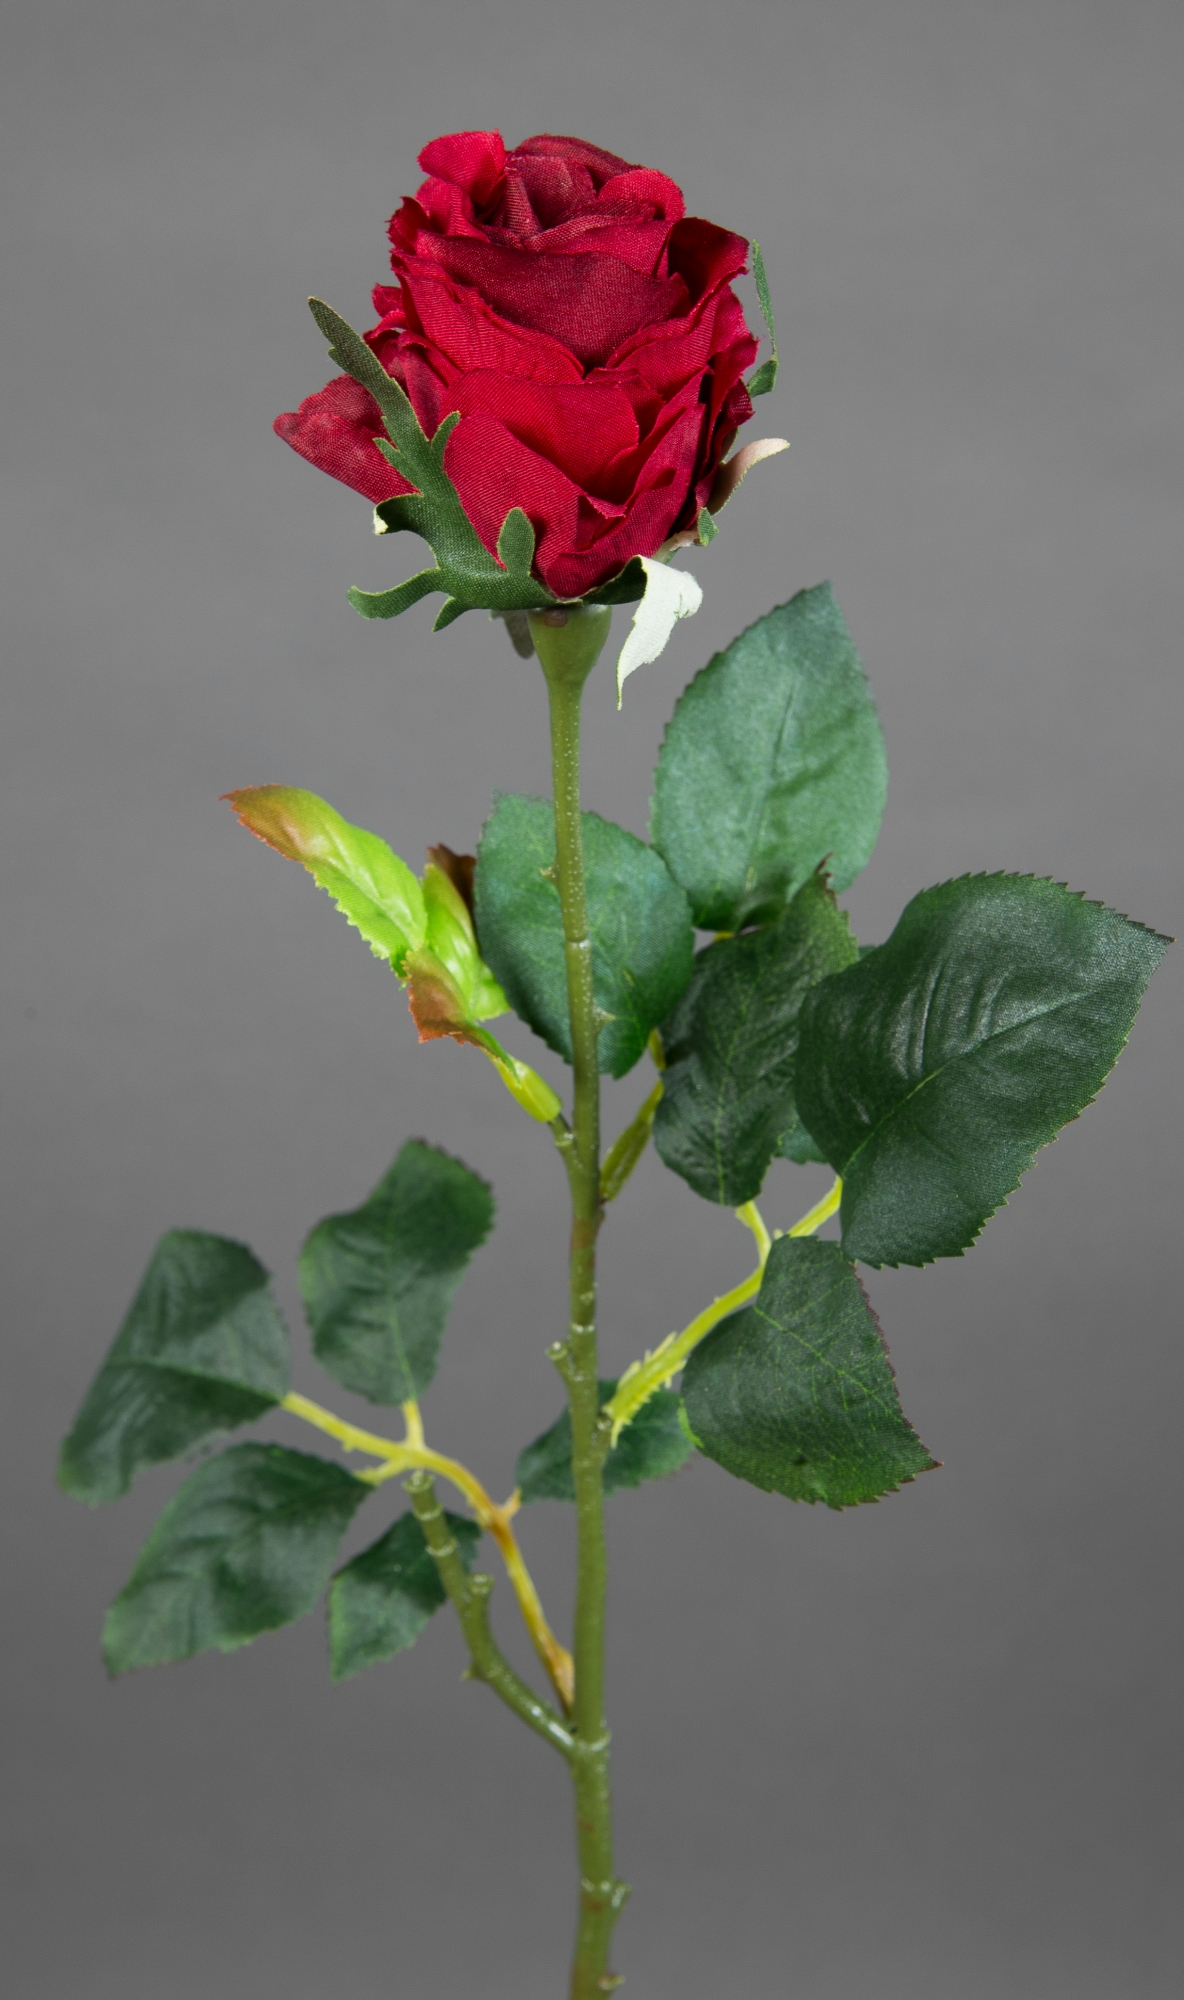 12 Stück Rose Elena 45cm bordeaux PM Seidenblumen Kunstblumen künstliche Blumen Rosen